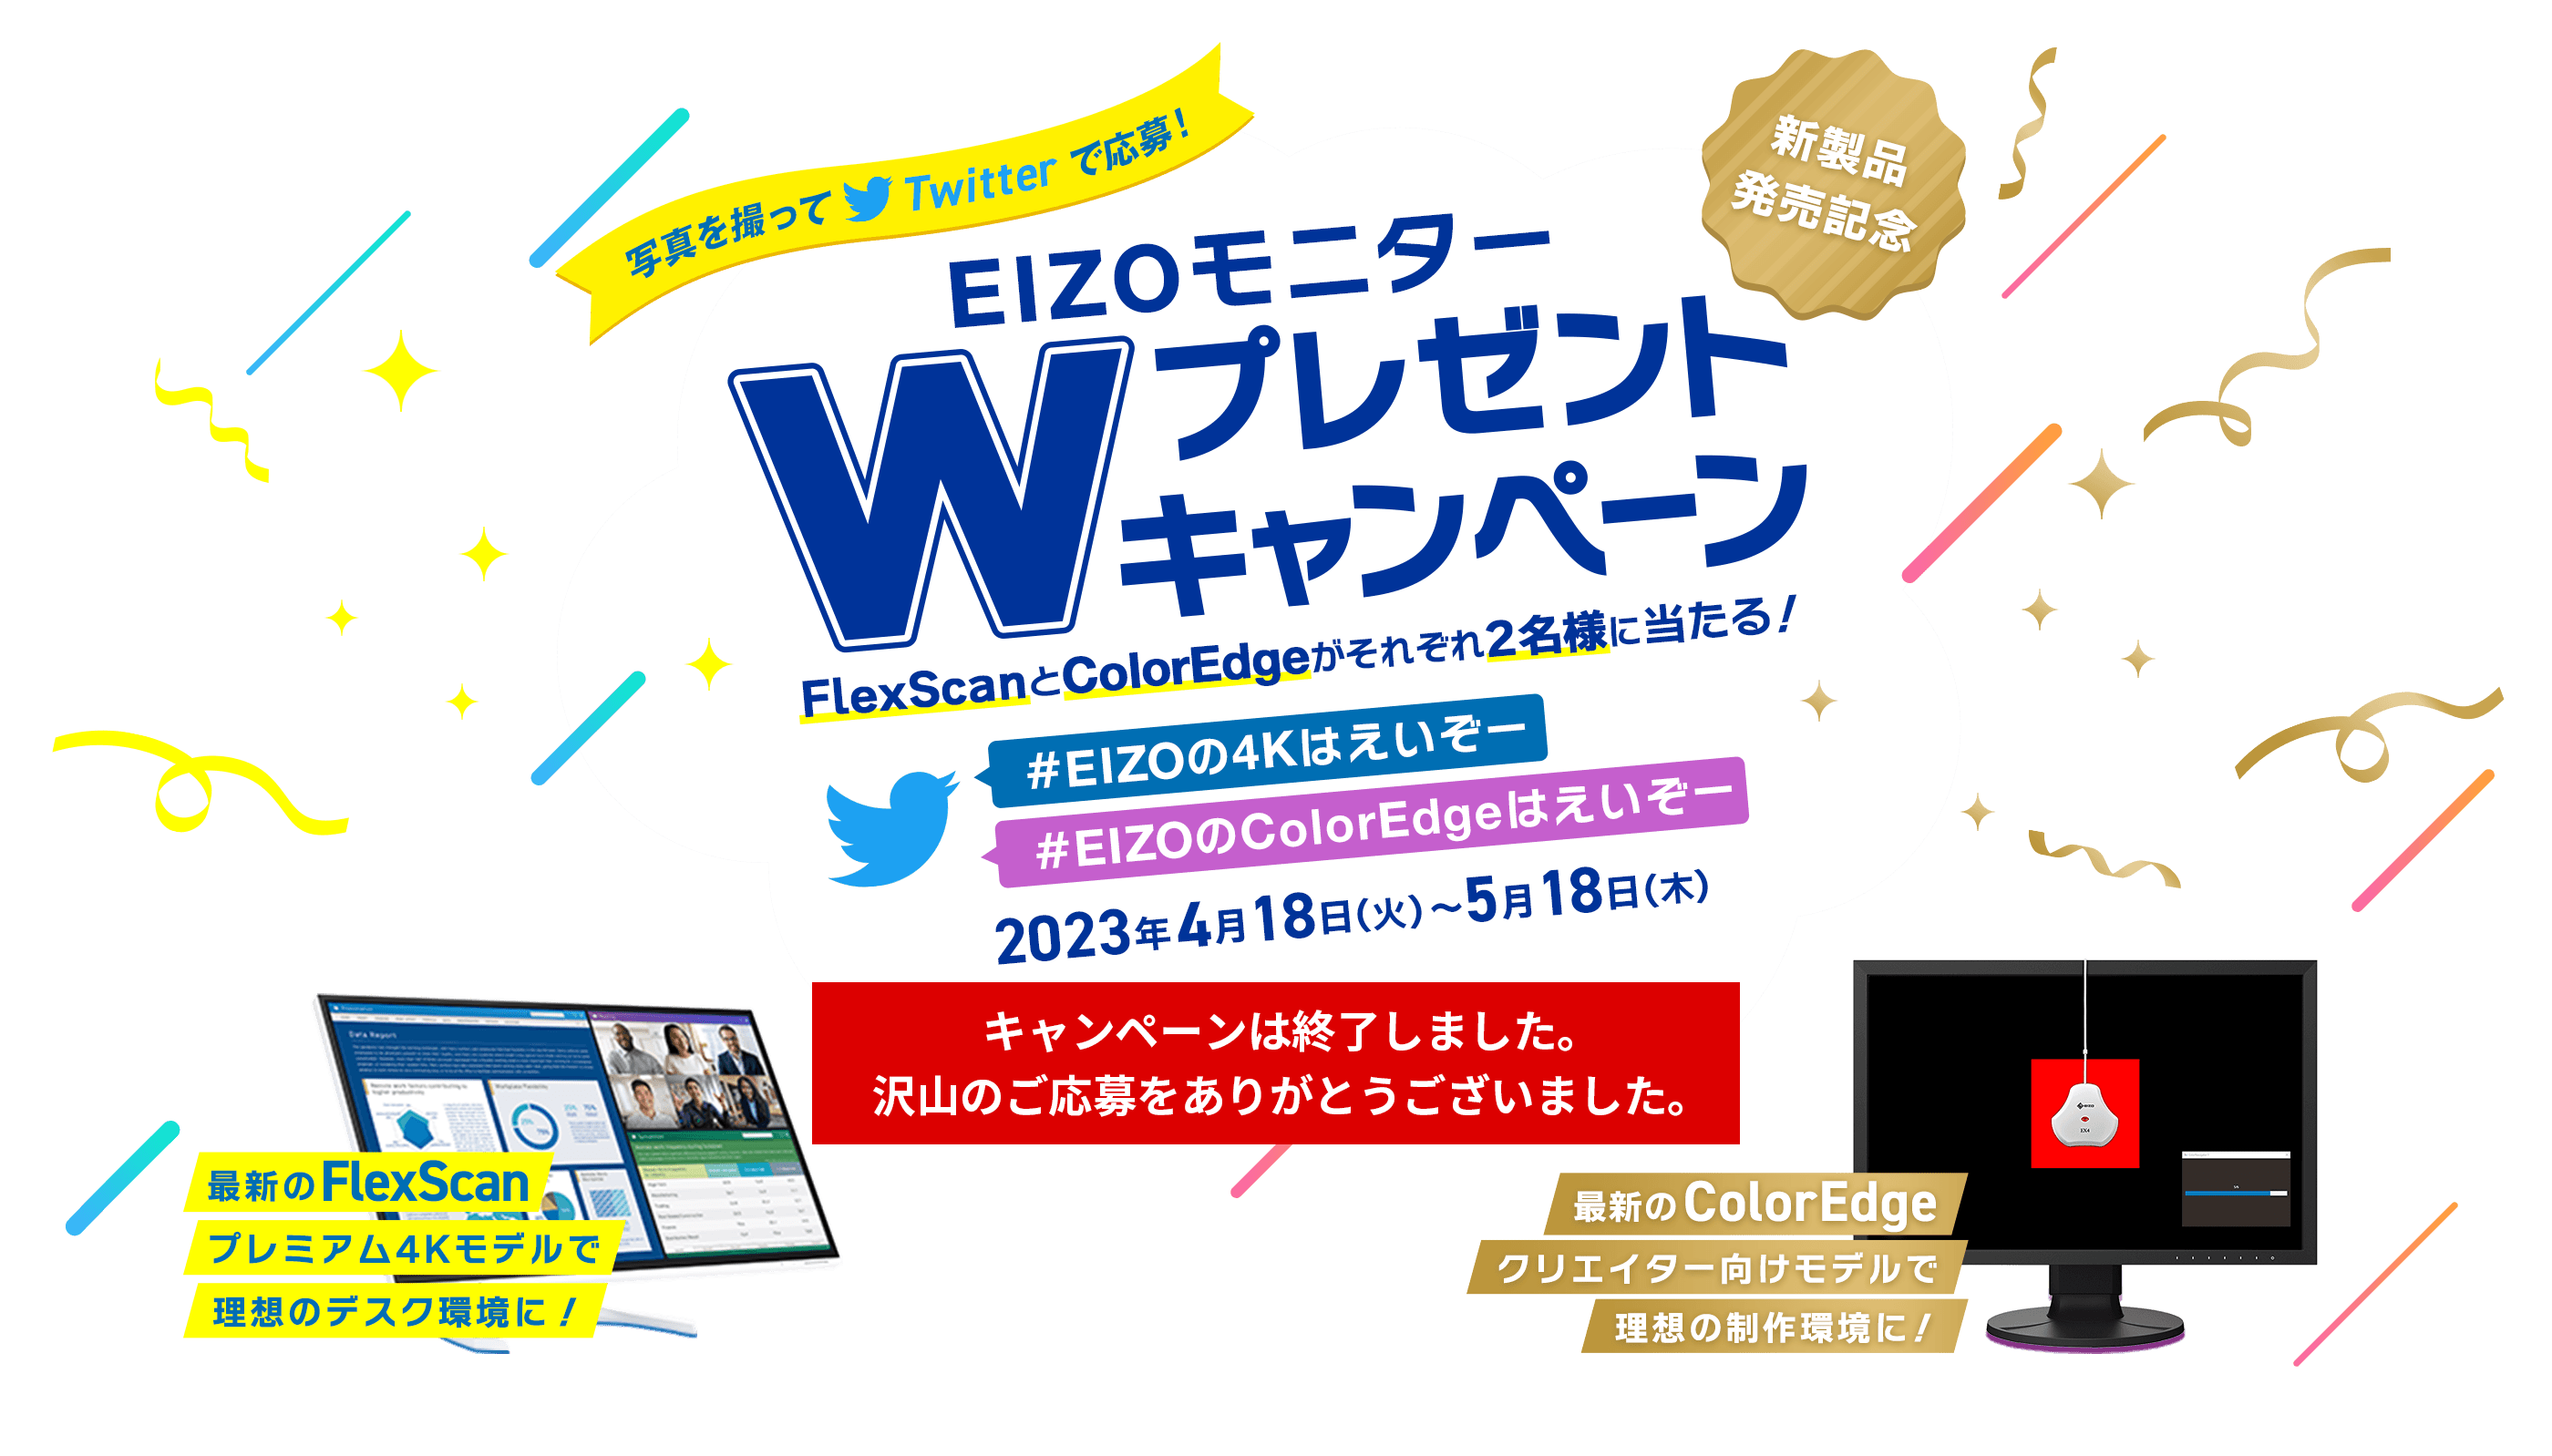 写真を撮ってTwitterで応募 EIZOモニターWプレゼントキャンペーン（#EIZOの4Kはえいぞー、#EIZOのColorEdgeはえいぞー）2023年4月18日（火）〜5月18日（木） -FlexScanとColorEdgeがそれぞれ2名様に当たる！